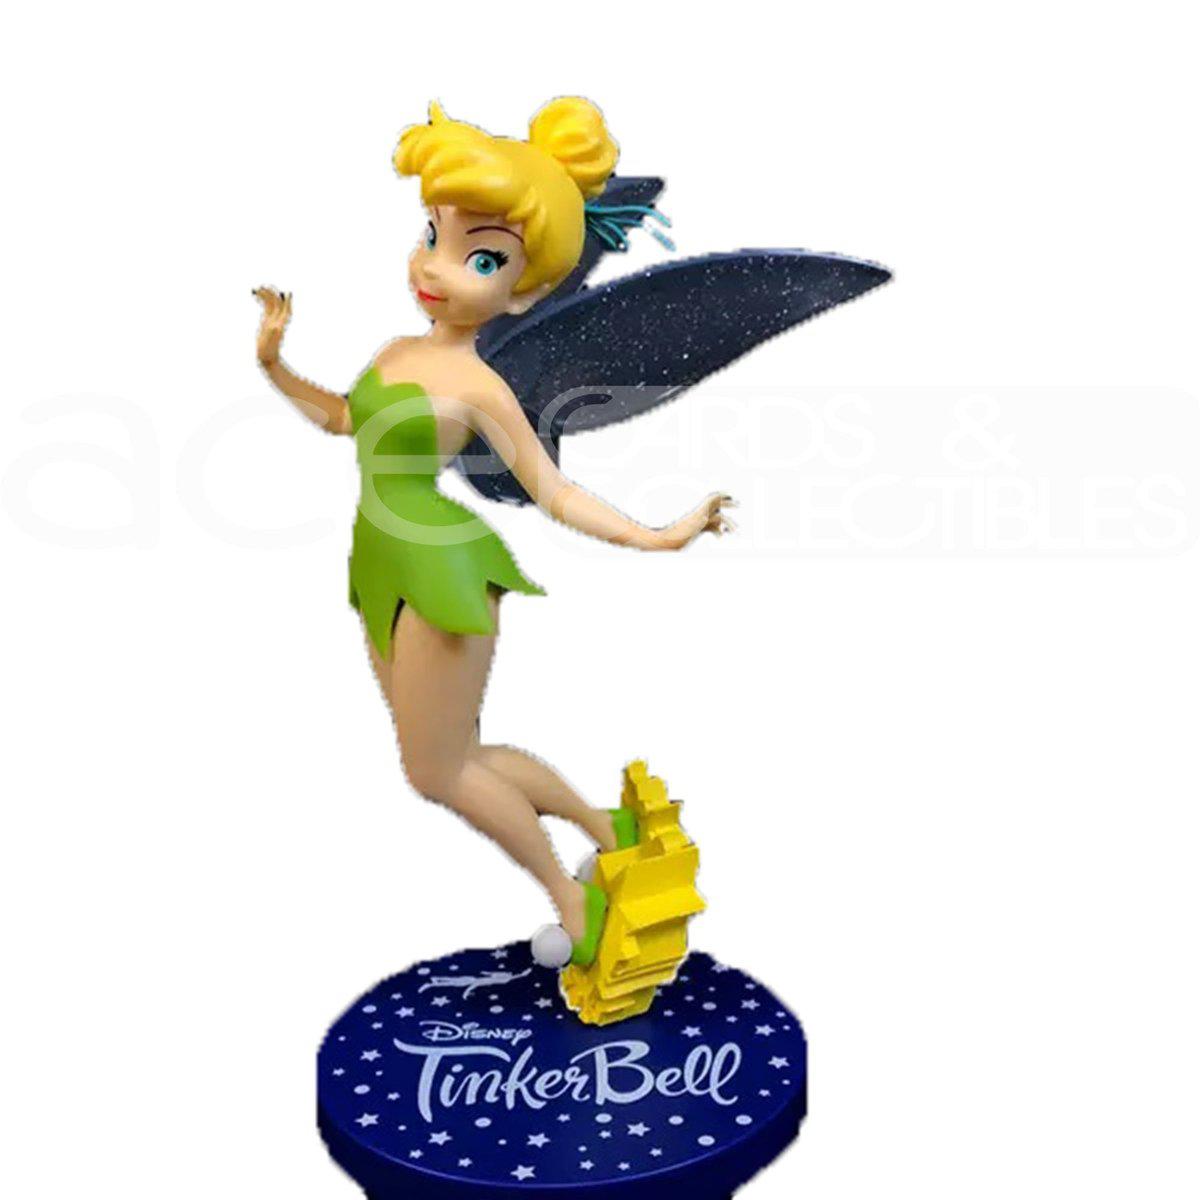 Disney Peter Pan Figure "Tinker Bell"-Sega-Ace Cards & Collectibles